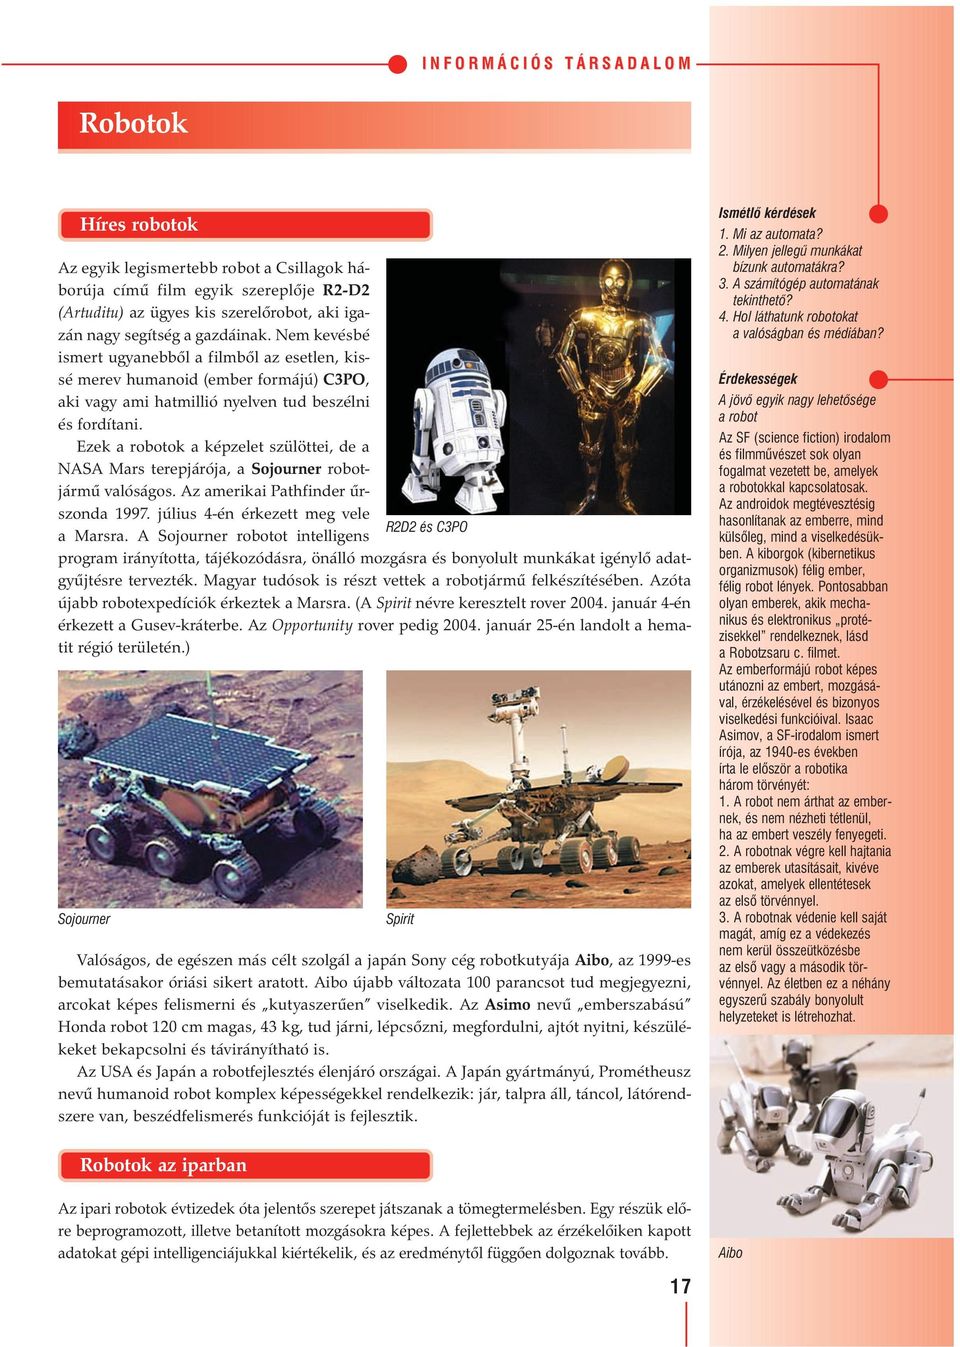 Ezek a robotok a képzelet szülöttei, de a NASA Mars terepjárója, a Sojourner robotjármű valóságos. Az amerikai Pathfinder űrszonda 1997. július 4-én érkezett meg vele R2D2 és C3PO a Marsra.